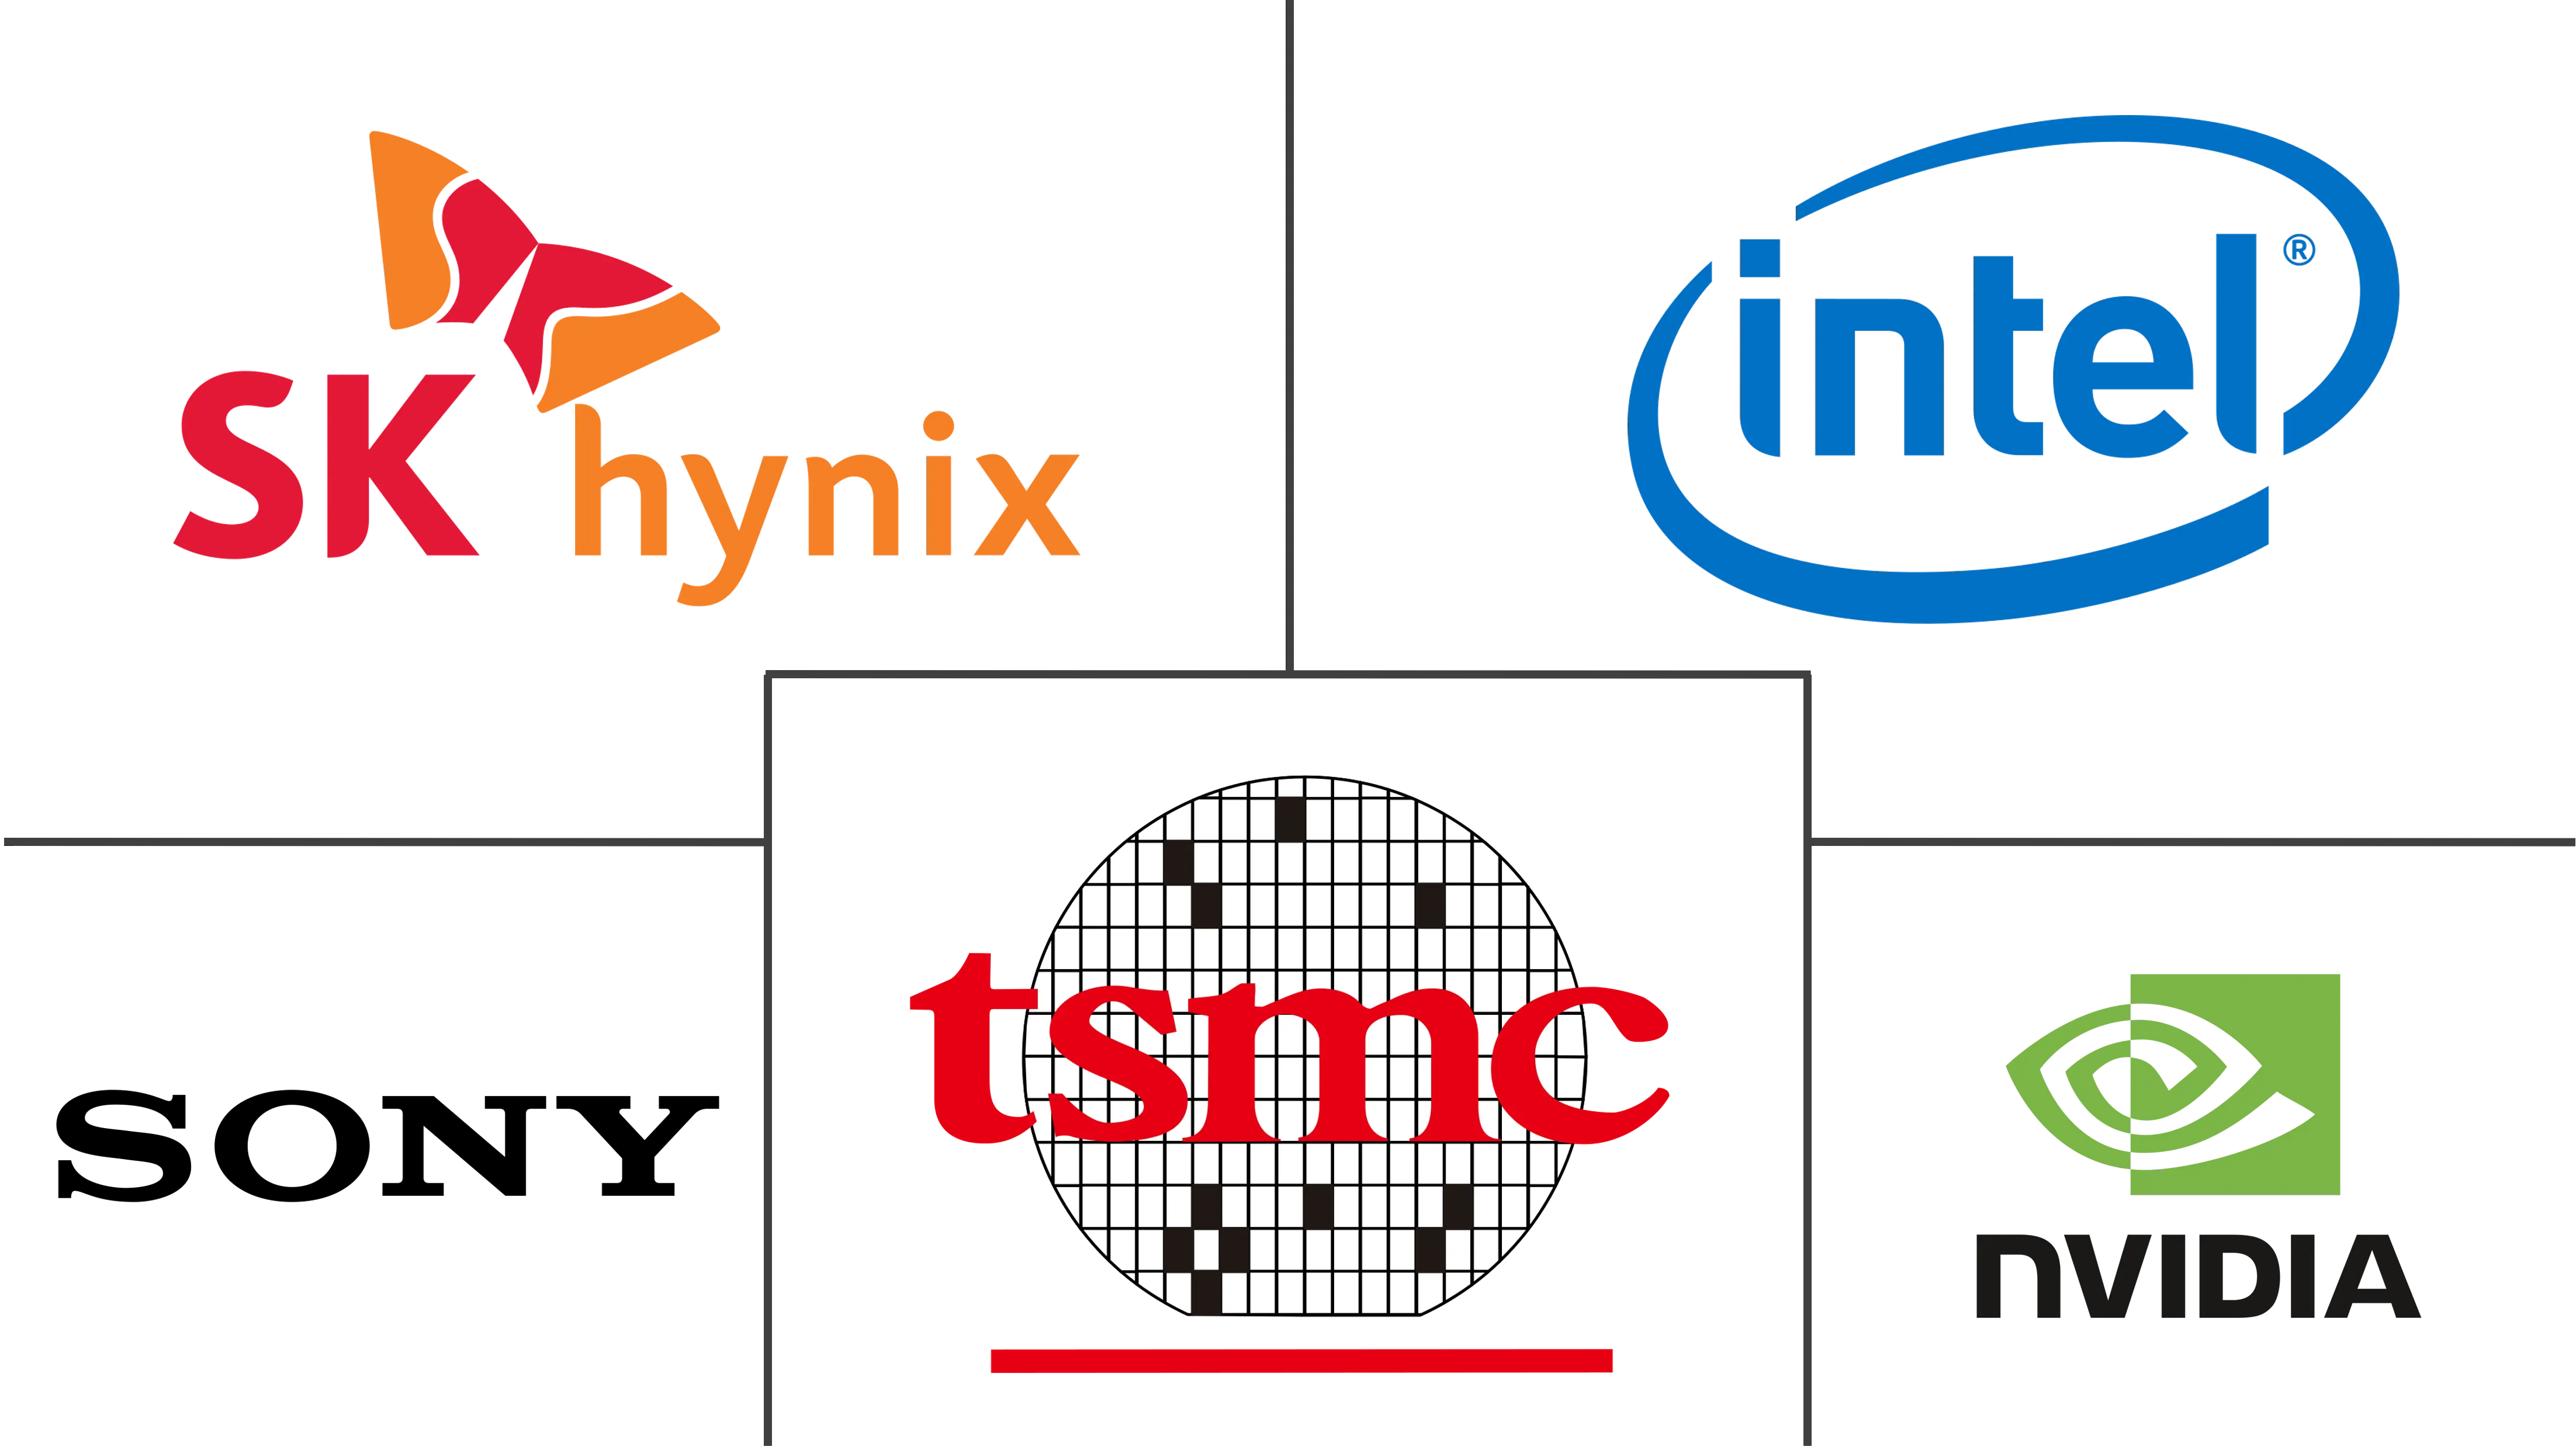 マイクロプロセッサ市場の主要企業